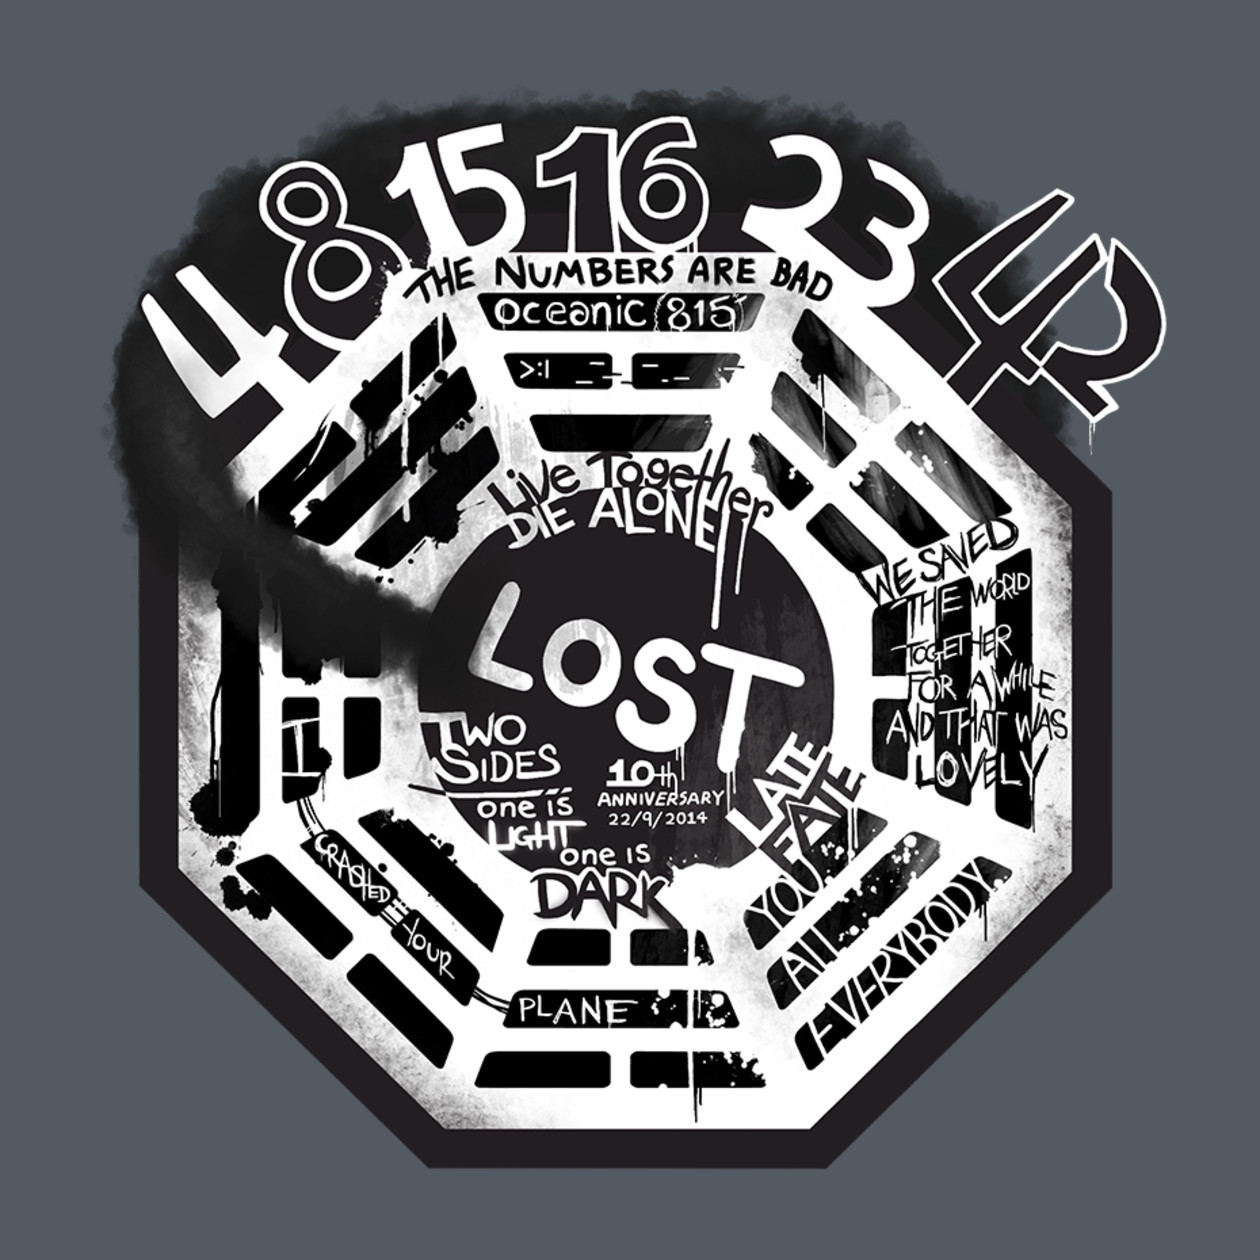 Today's T: 今日のテレビシリーズ「LOST」の2004年初回放送から10周年記念 Tシャツ